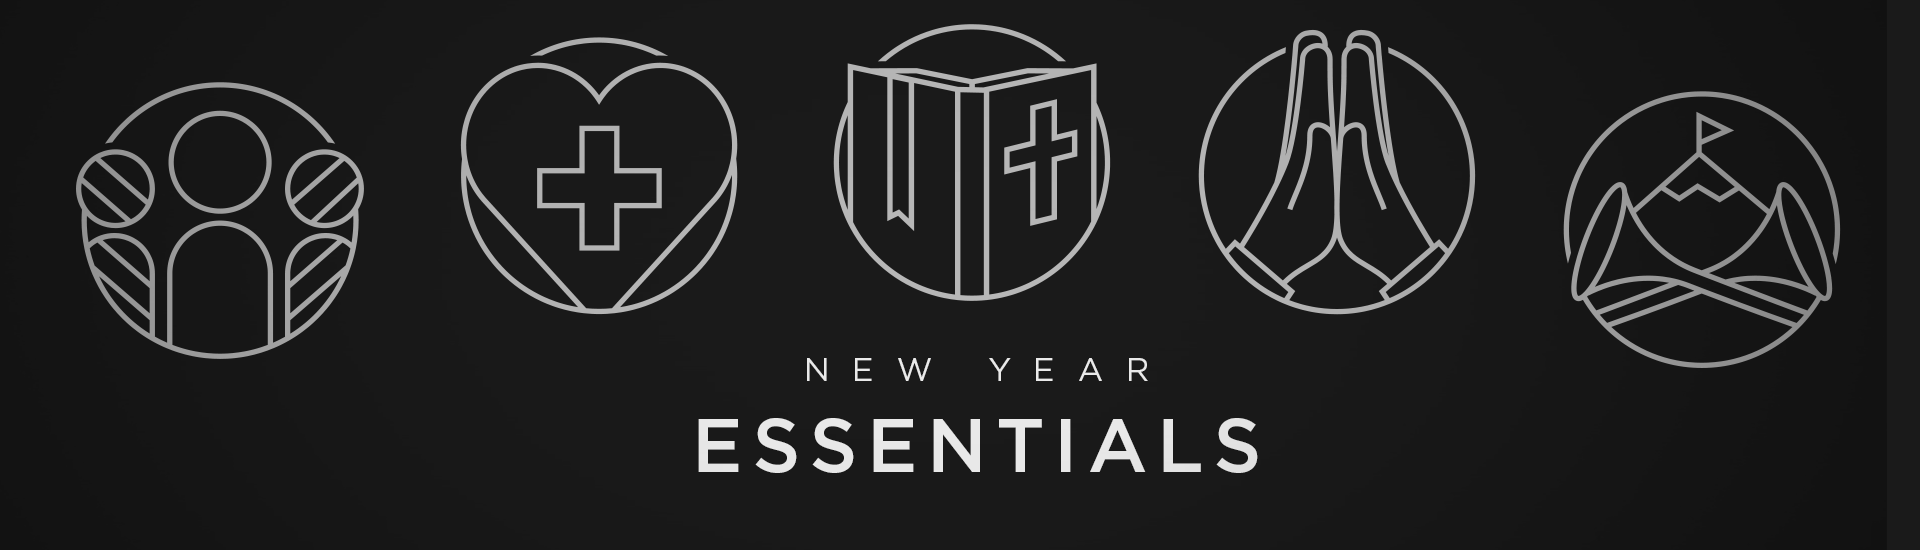 New Year Essentials 2018